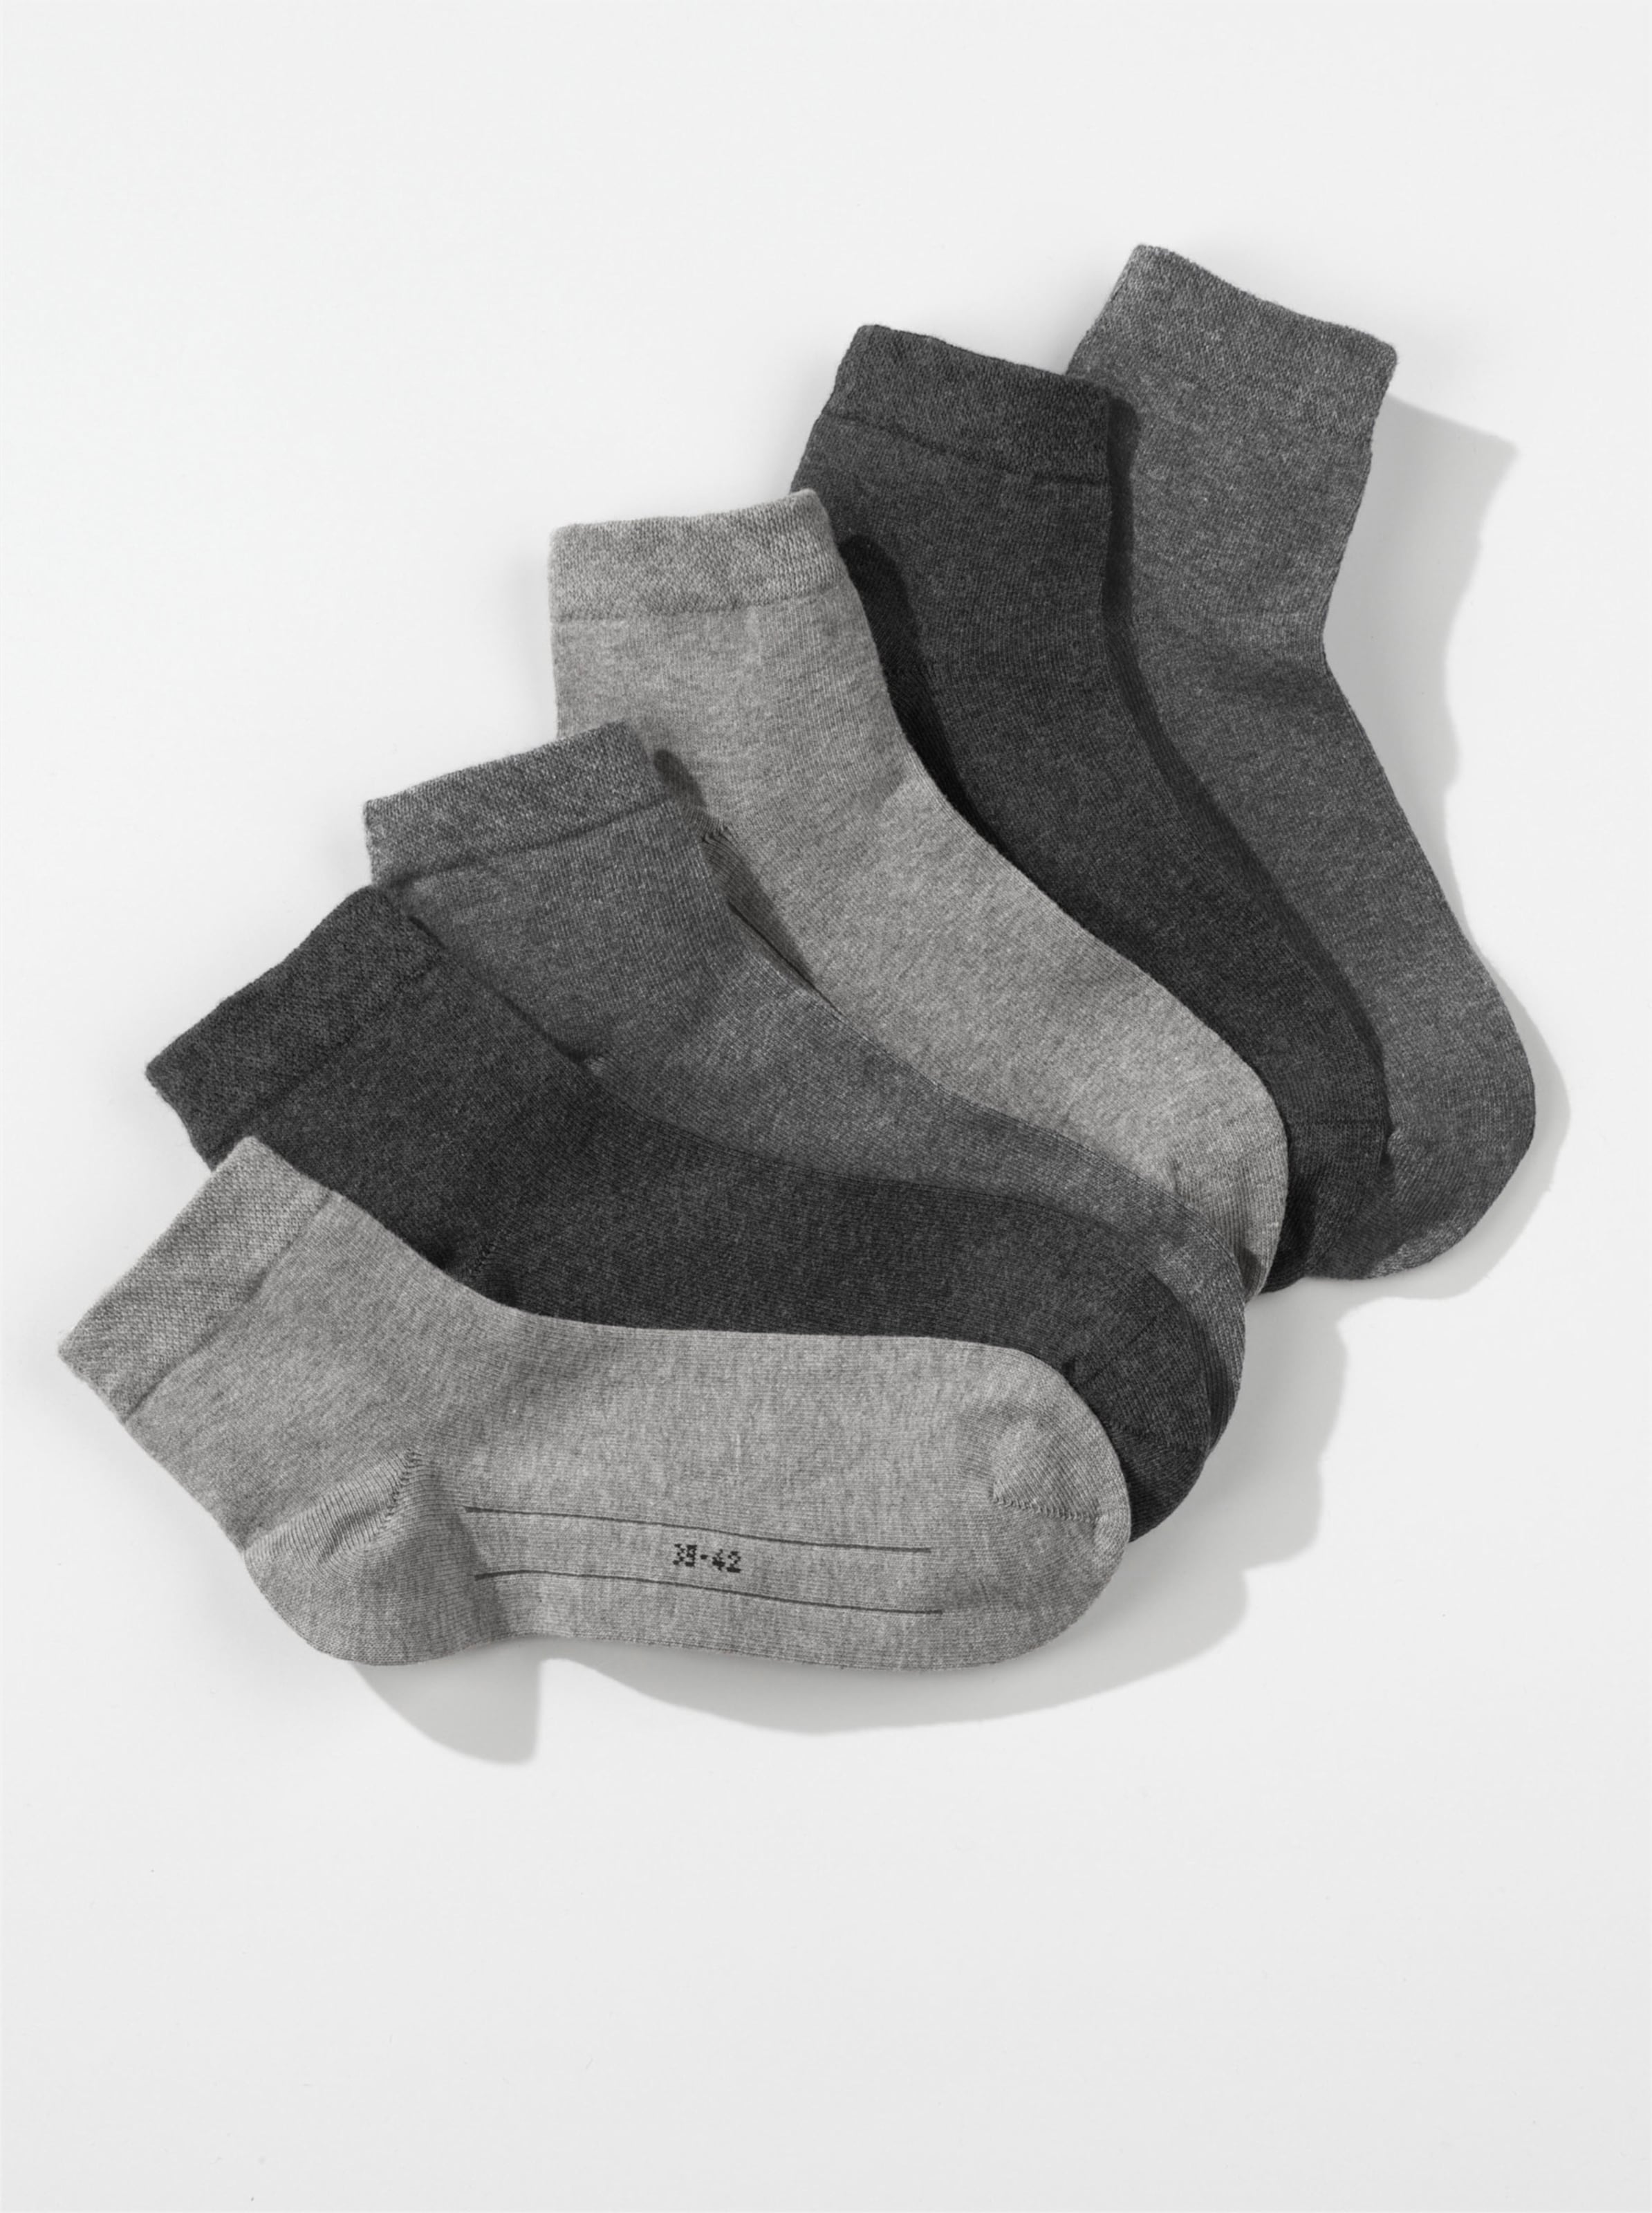 Witt Damen Kurzschaft-Socken, 3x anthrazit + 2x grau + 2x hellgrau-meliert